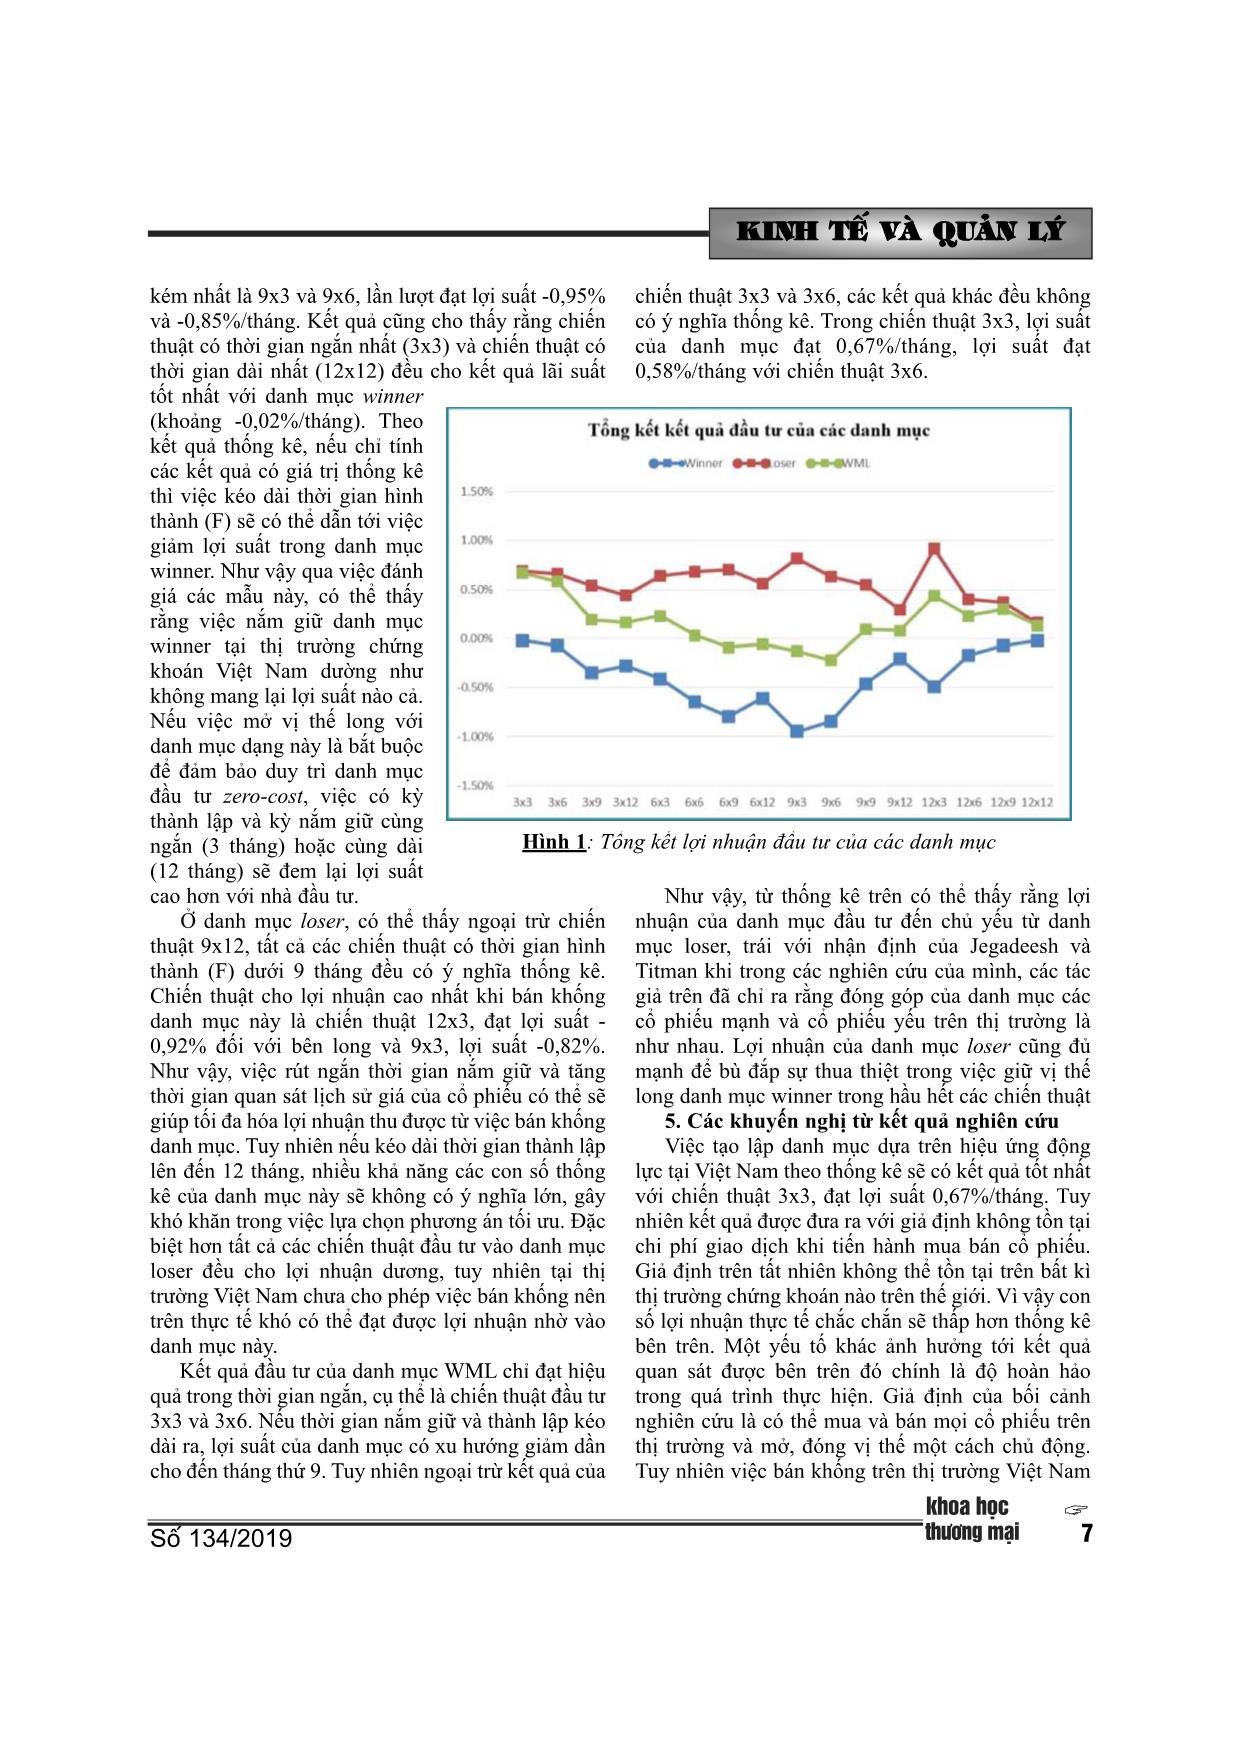 Hiệu ứng động lực trên thị trường chứng khoán Việt Nam trang 6